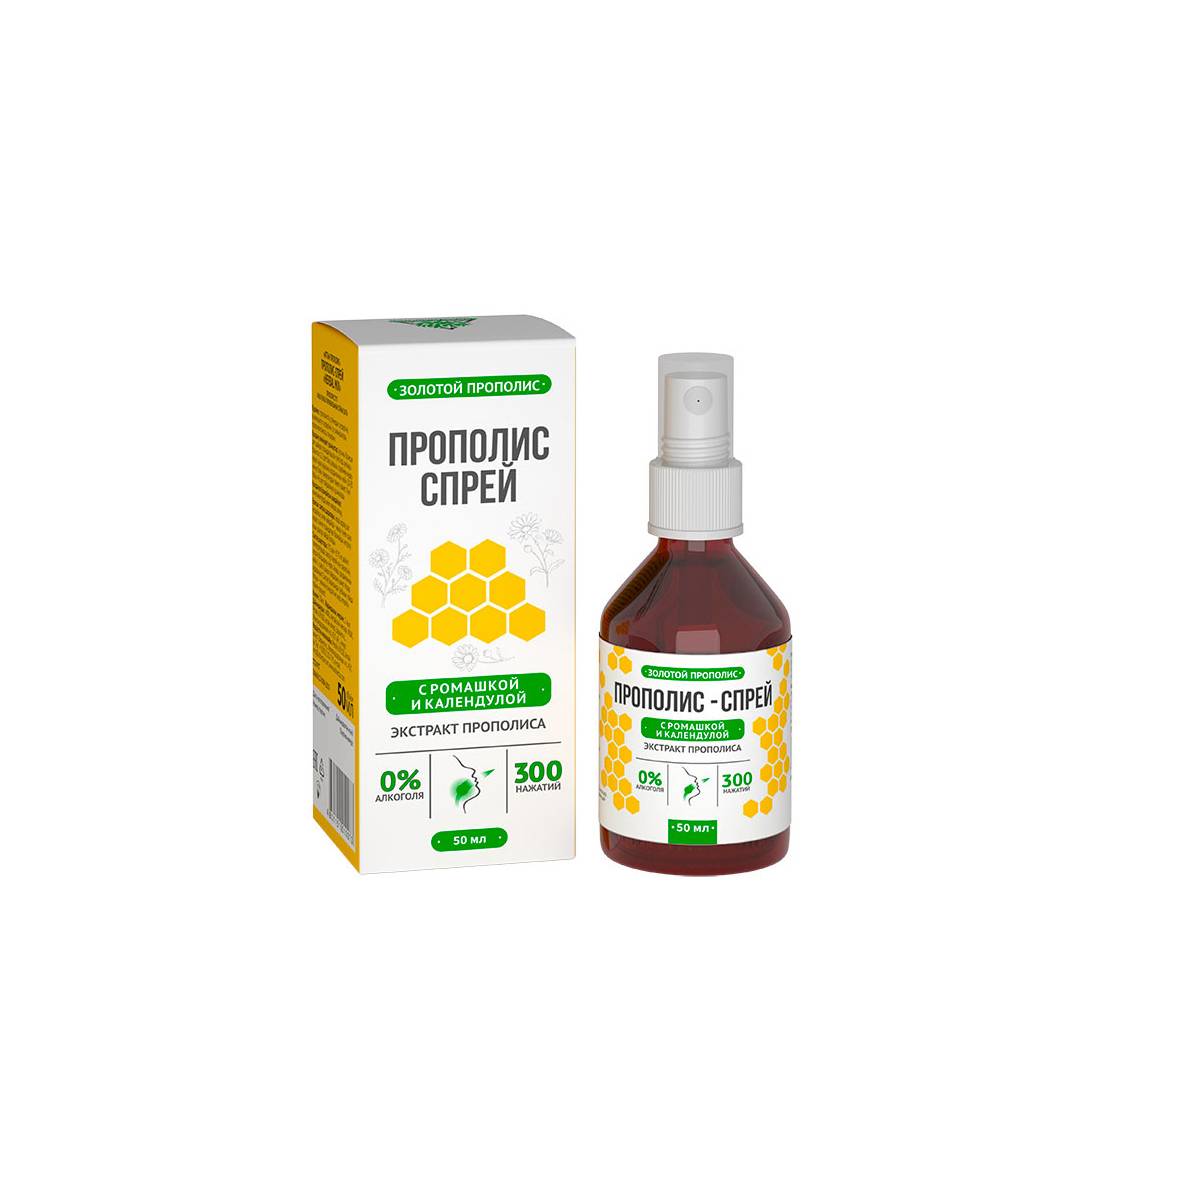 Propolis-Spray p/u igiena bucala "Herbal Mix" 50 ml image